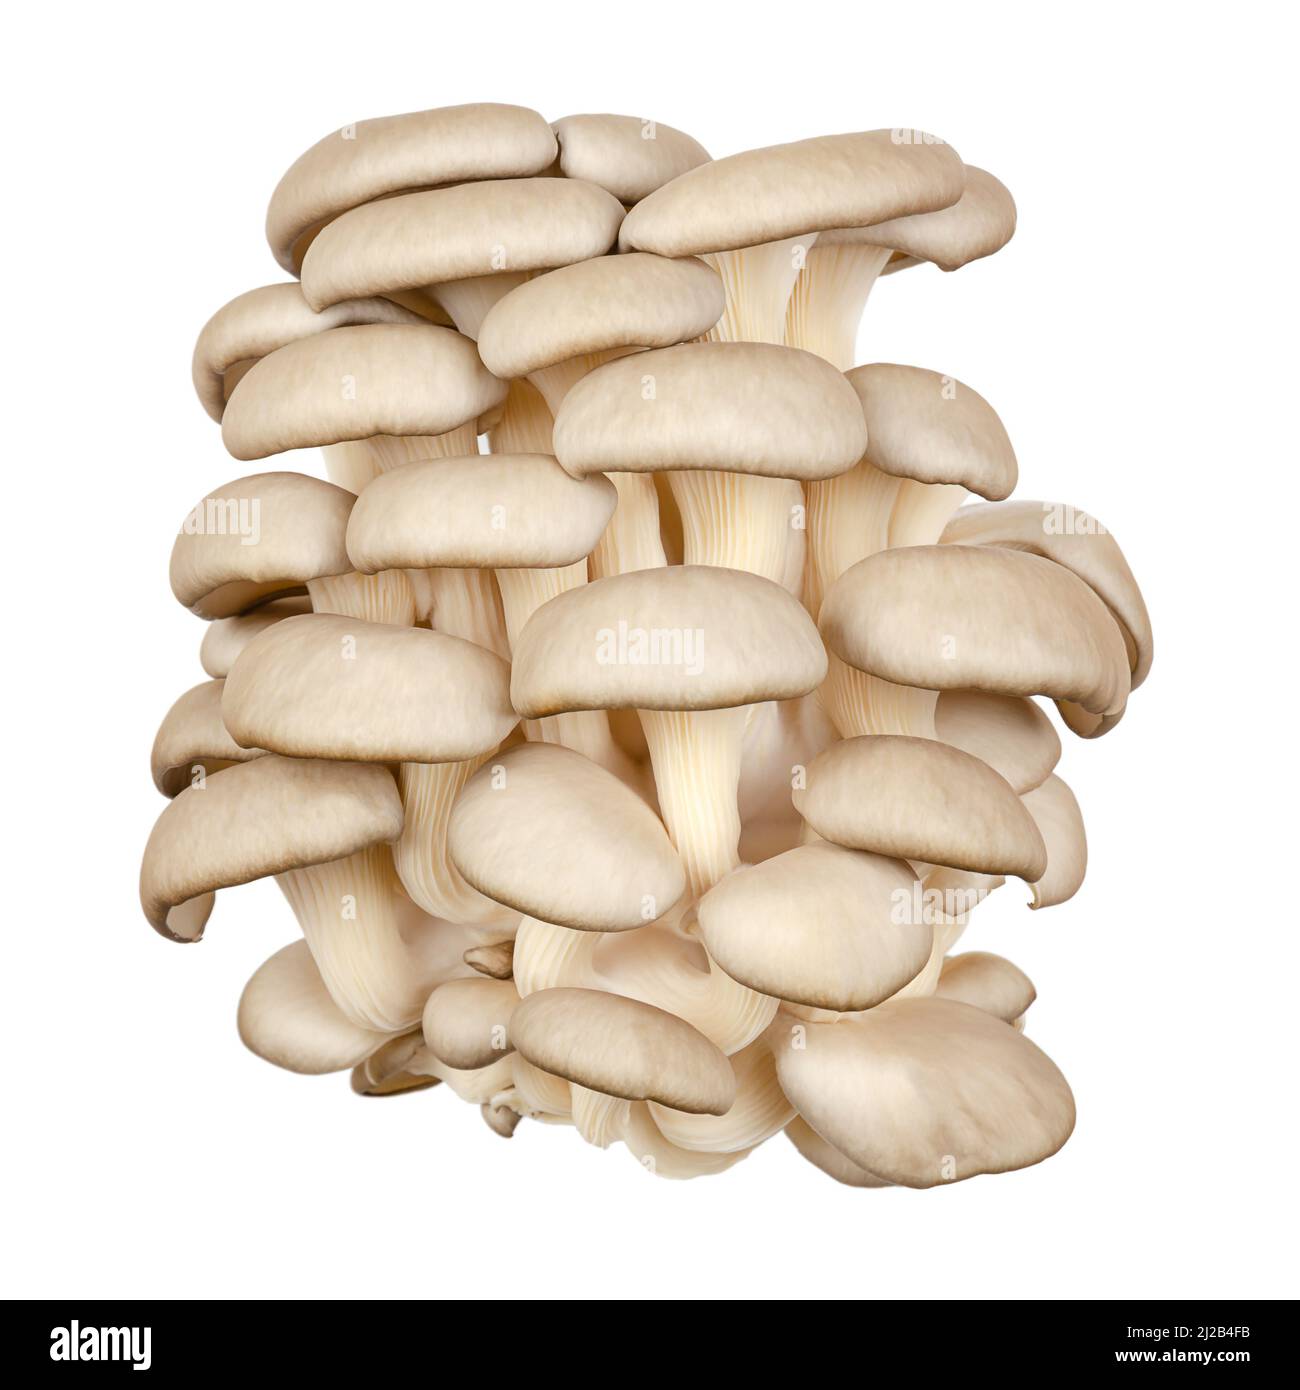 Gruppo di funghi di ostriche freschi, vista frontale. Pleurotus, noto anche come abalone o funghi di albero. Uno dei funghi più coltivati. Foto Stock